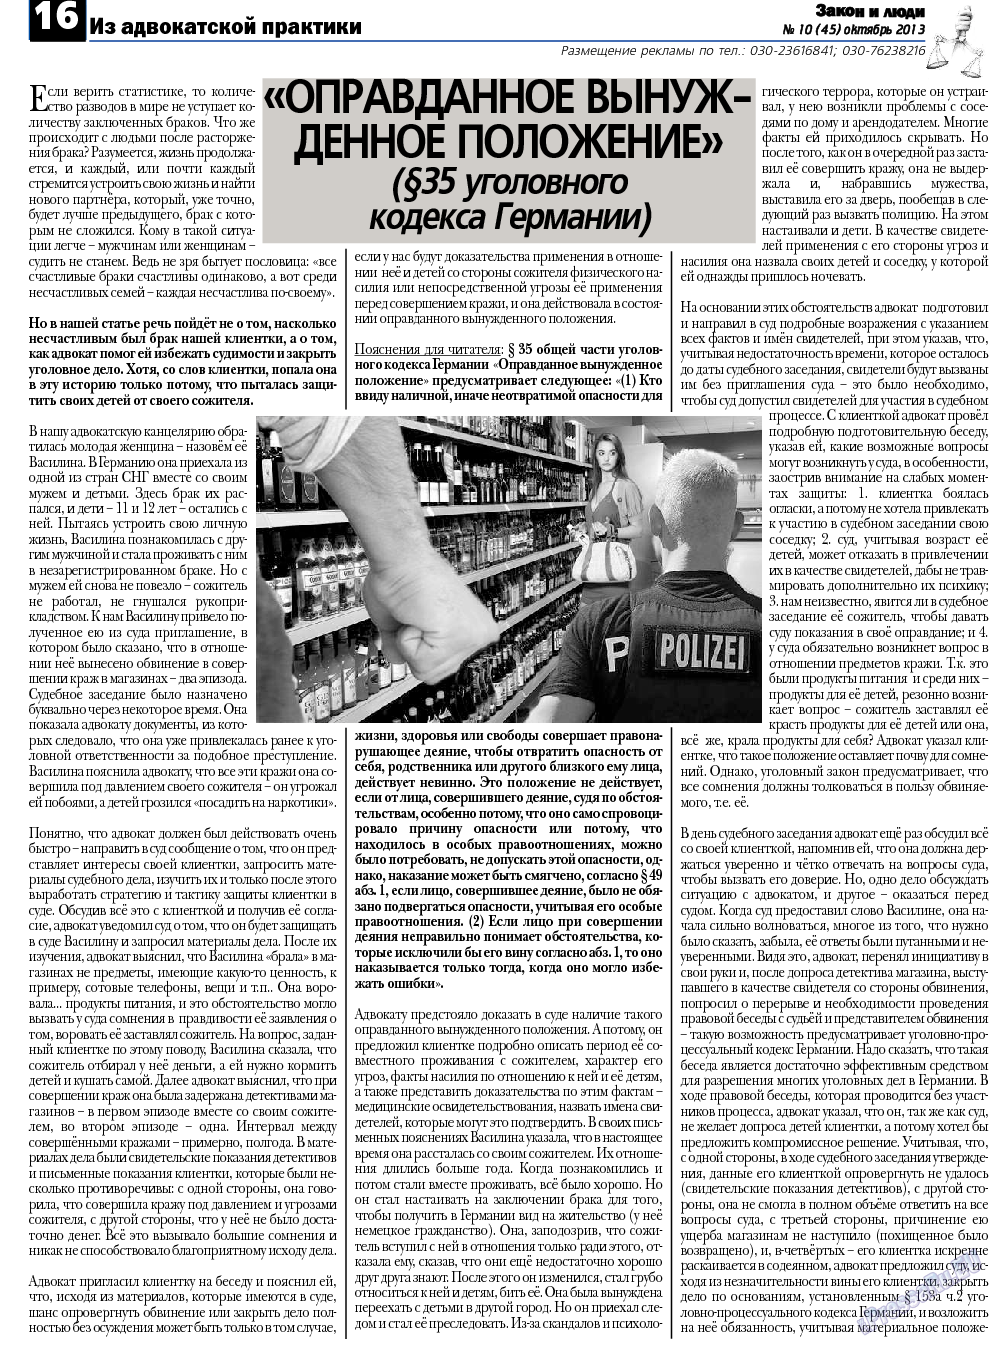 Закон и люди, газета. 2013 №10 стр.16